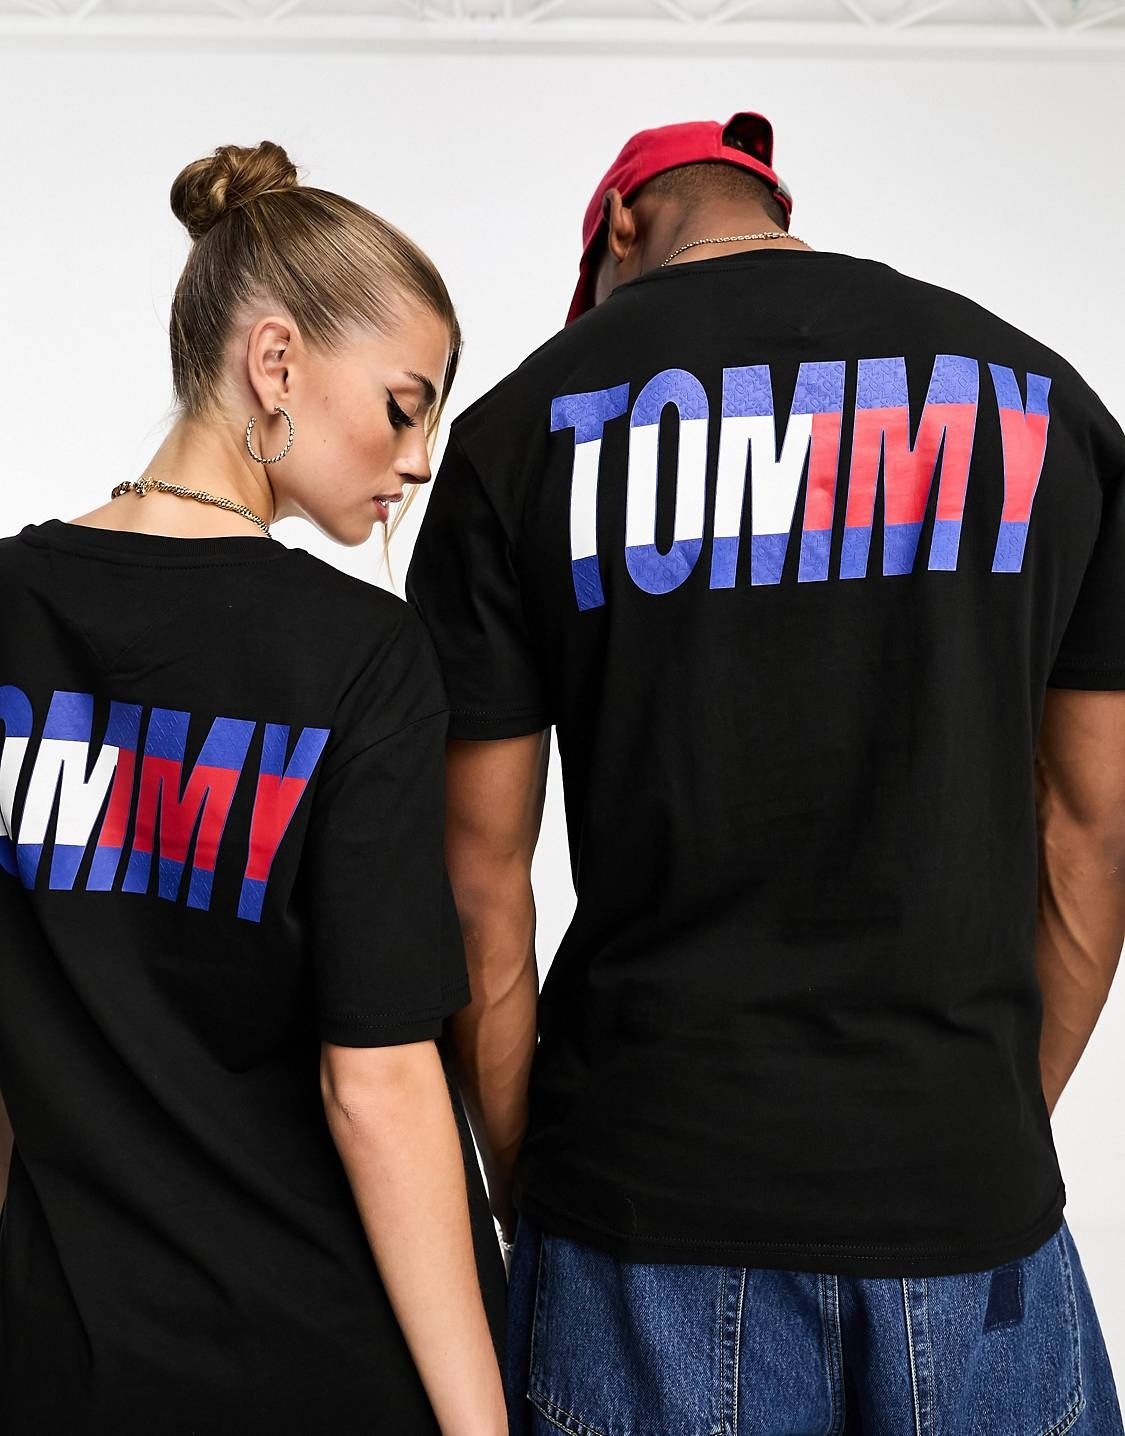 Tommy Jeans - koszulka męska "L"